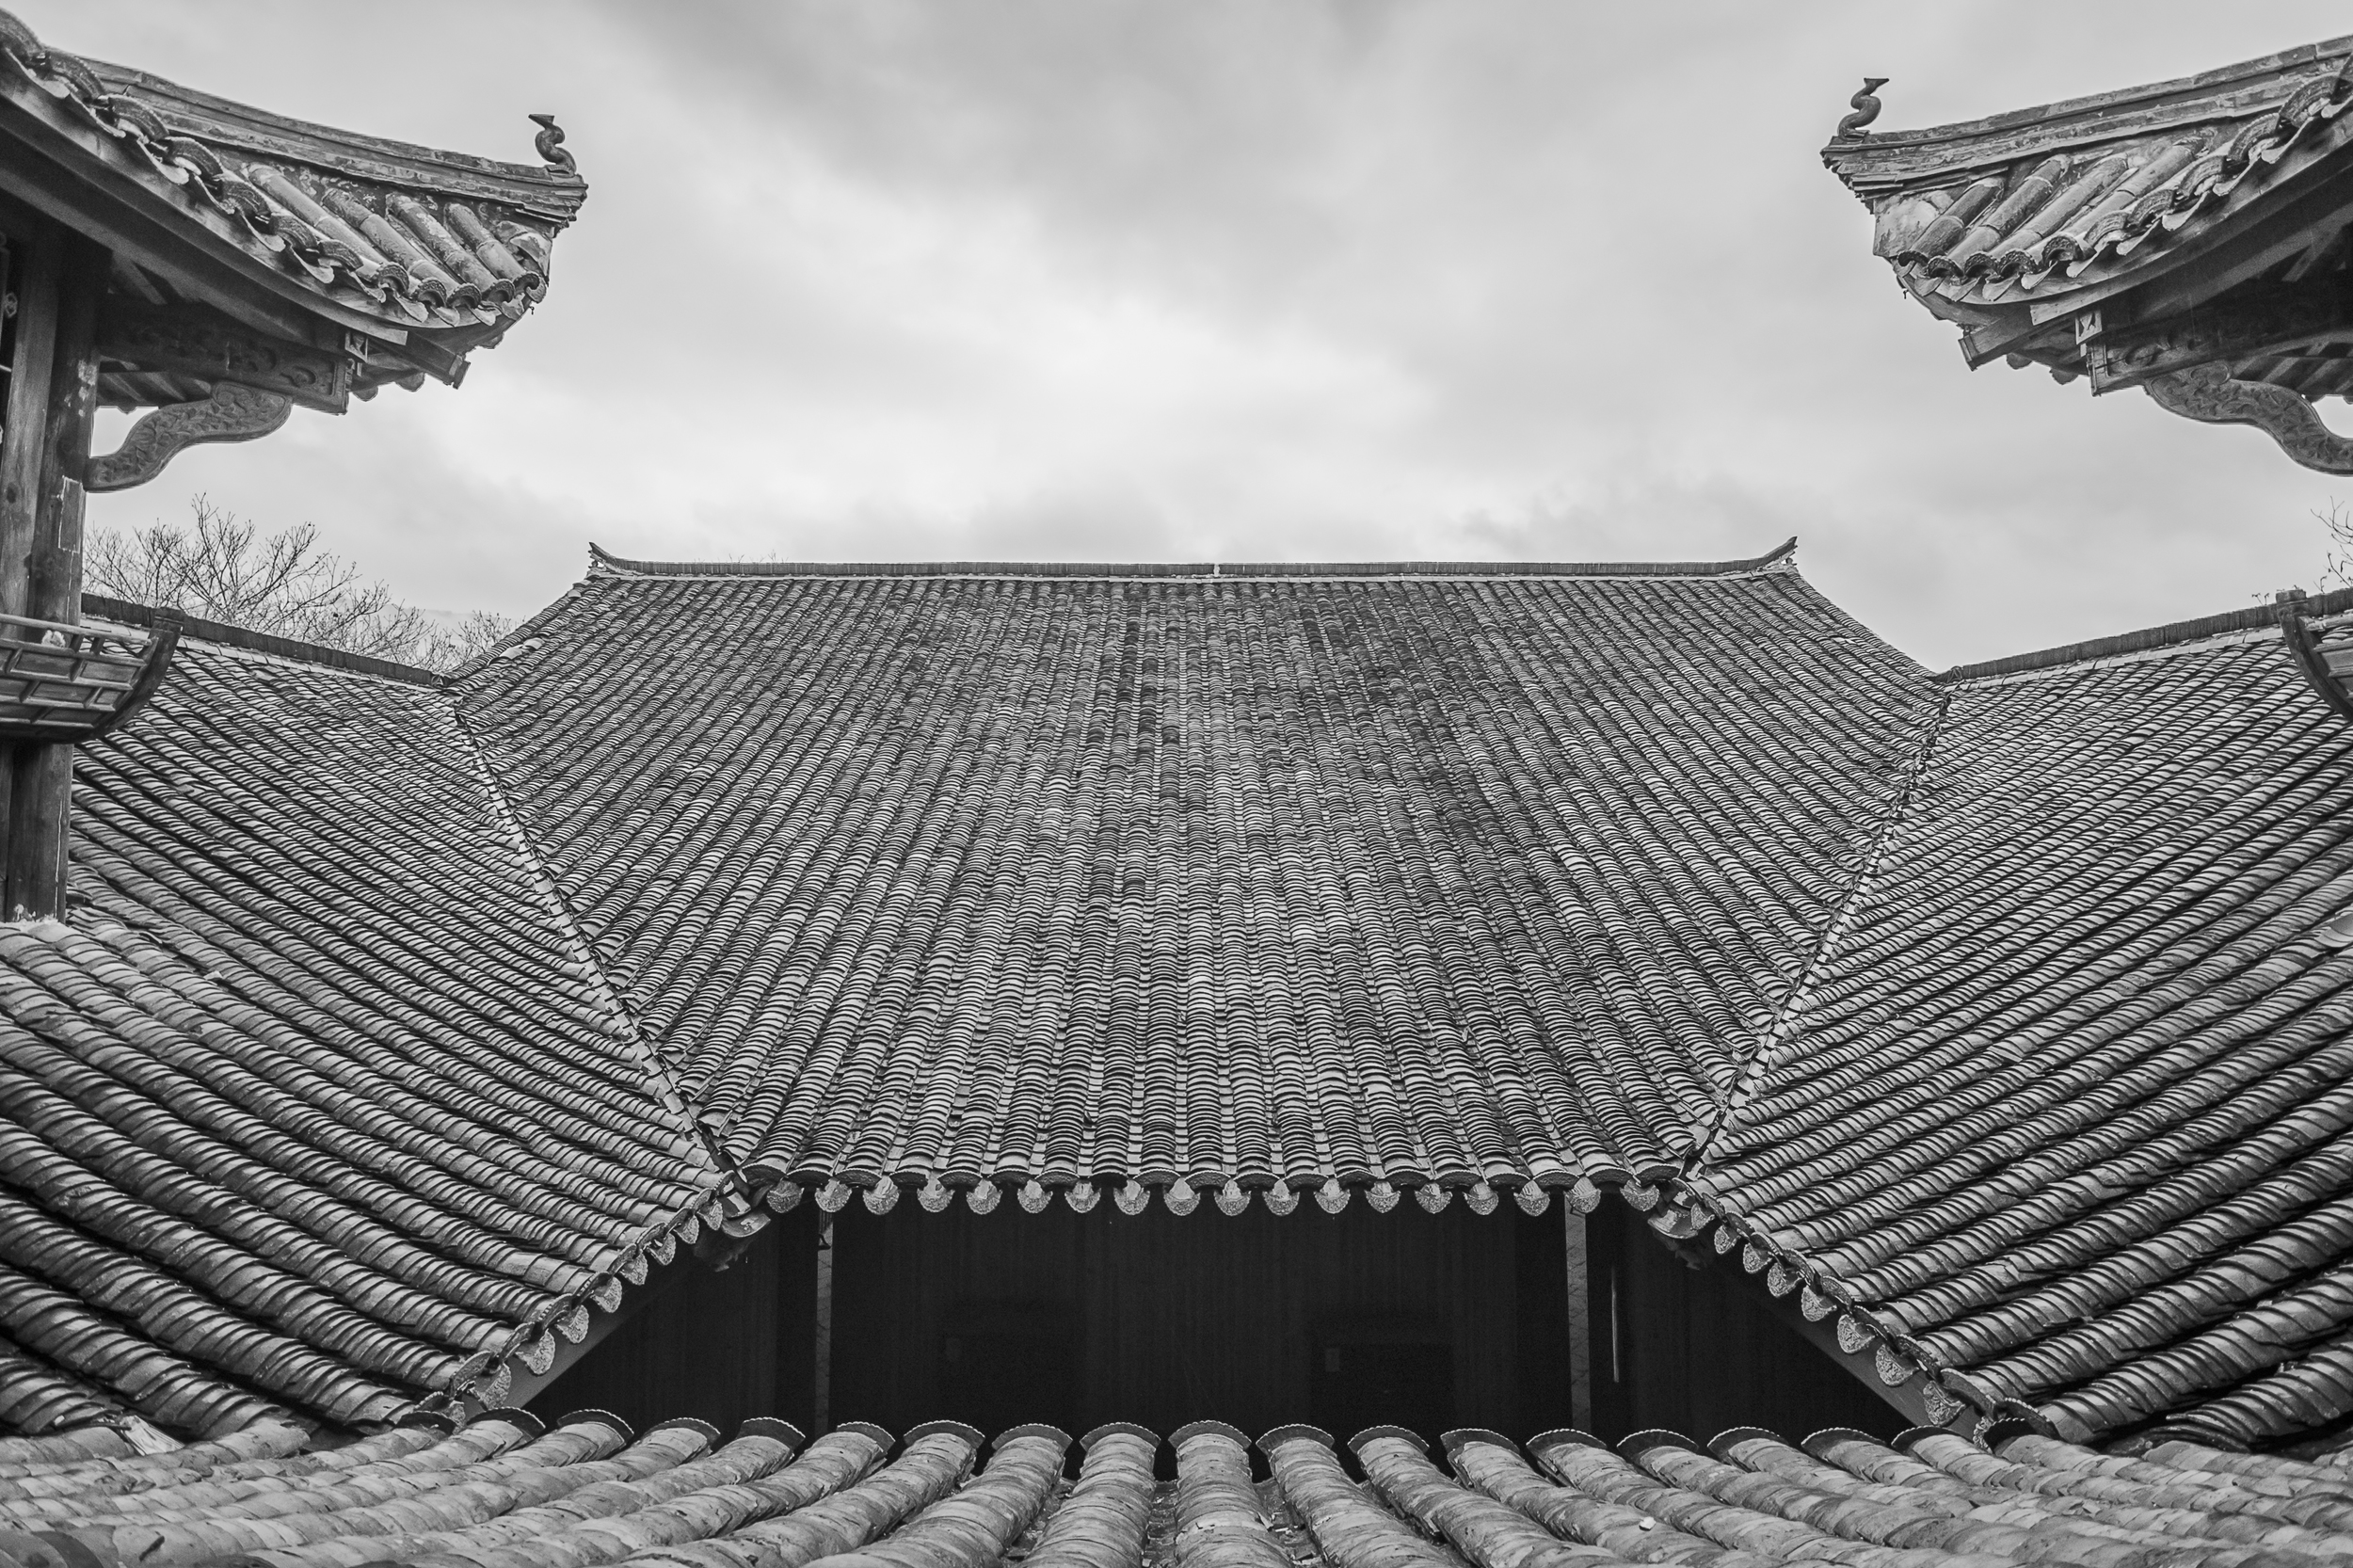 阁楼 / Roof of ancestral hall